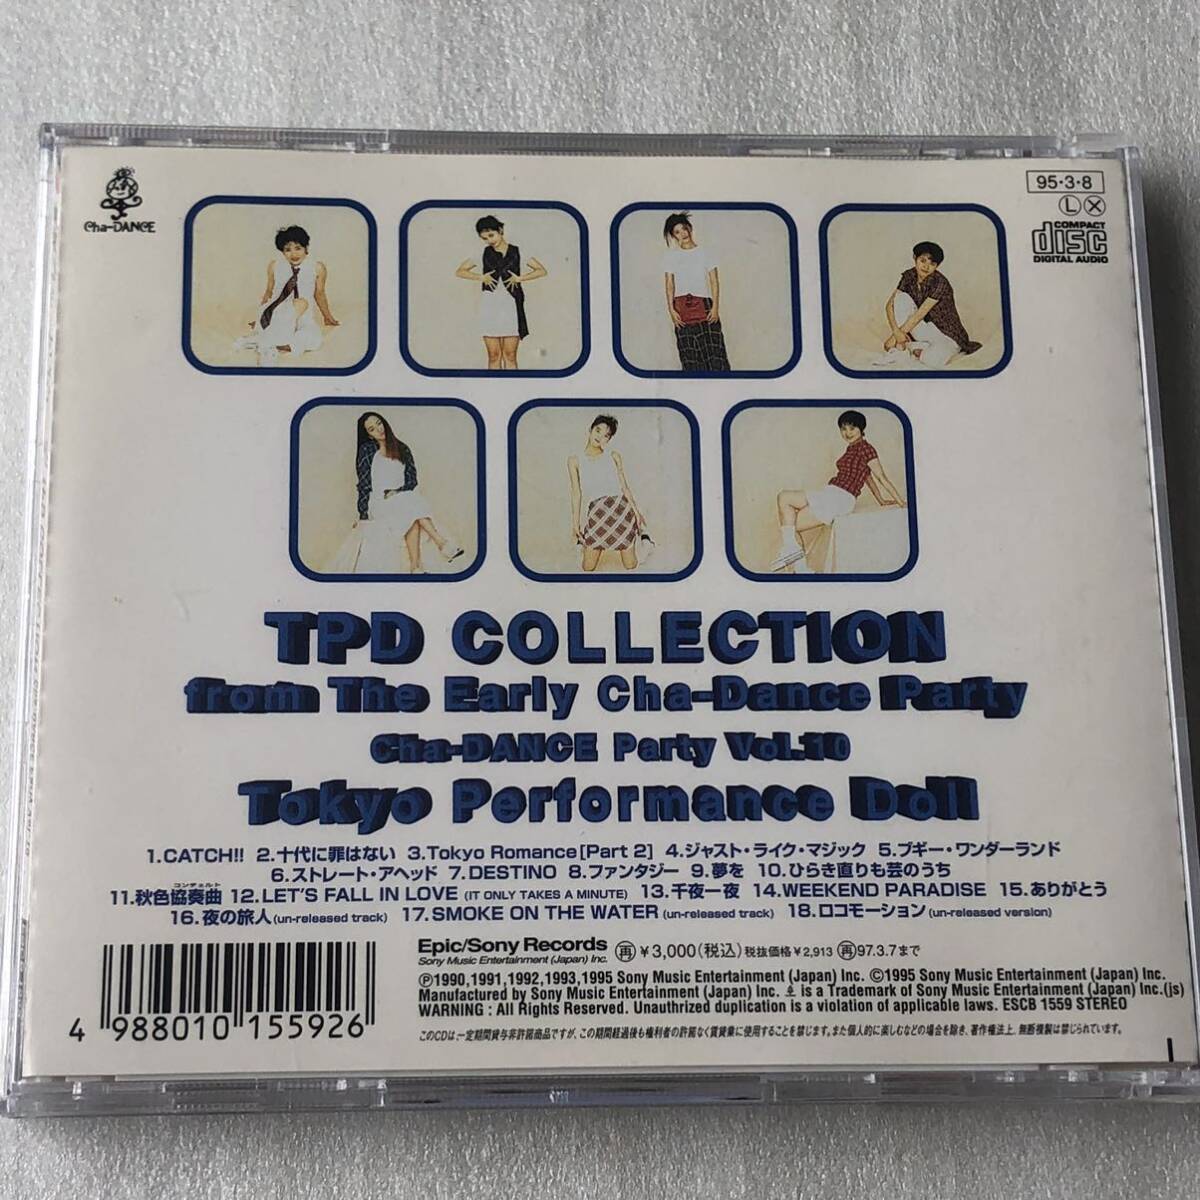 中古CD 東京パフォーマンスドール/TPD COLLECTION(1995年)_画像2